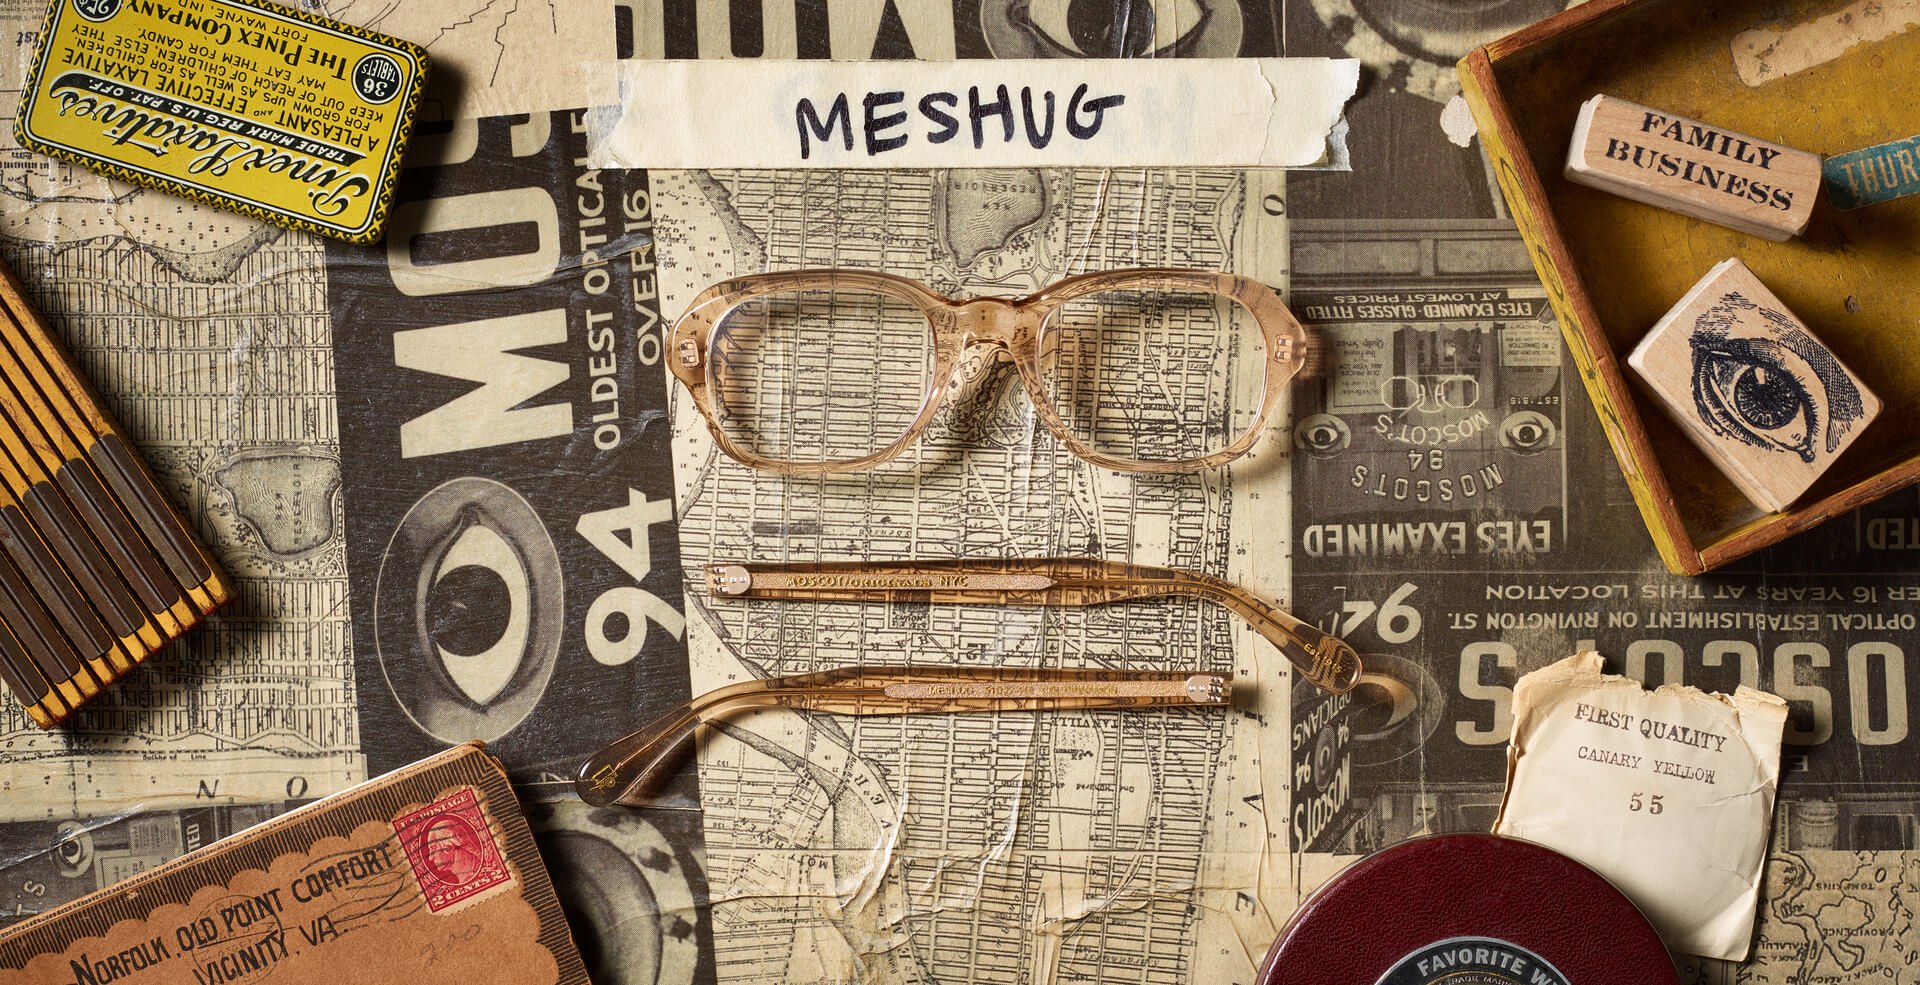 The MESHUG